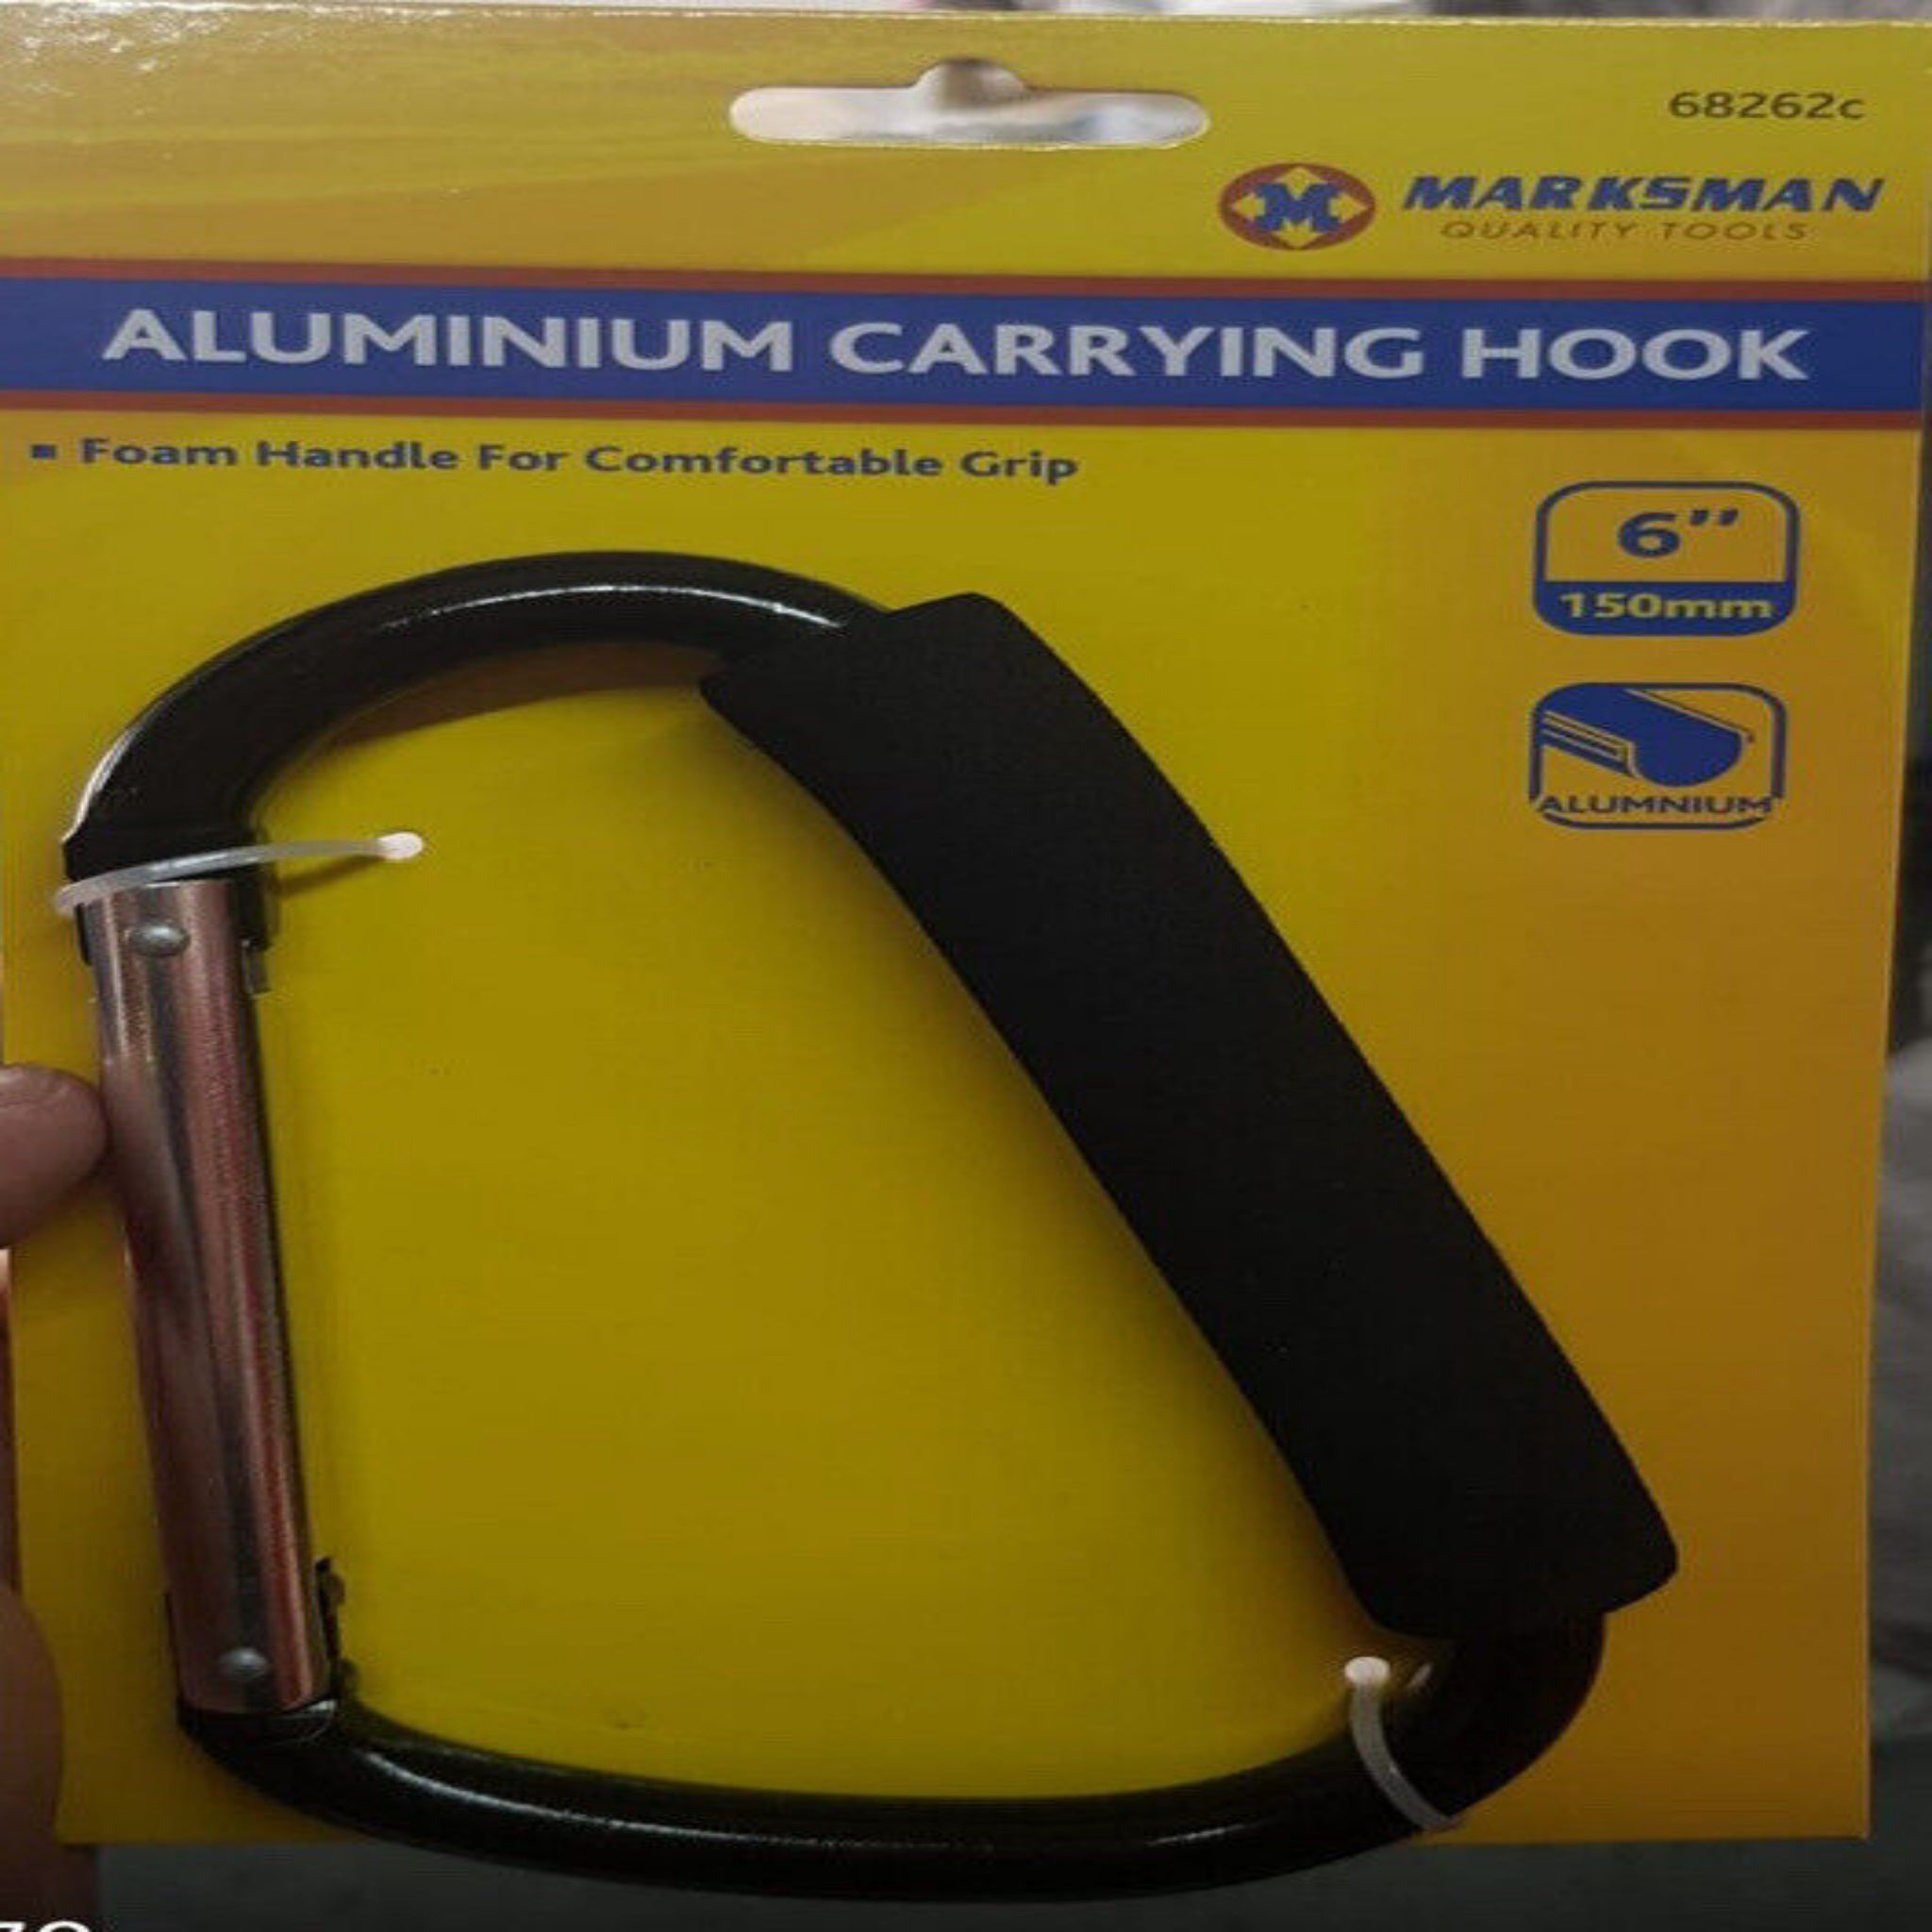 Beclen Harp Large 6'' Aluminium Carrying Hook Spring Loaded Snap Lock Carabiner/  Camping Grip Rucksack Carabiner Bag